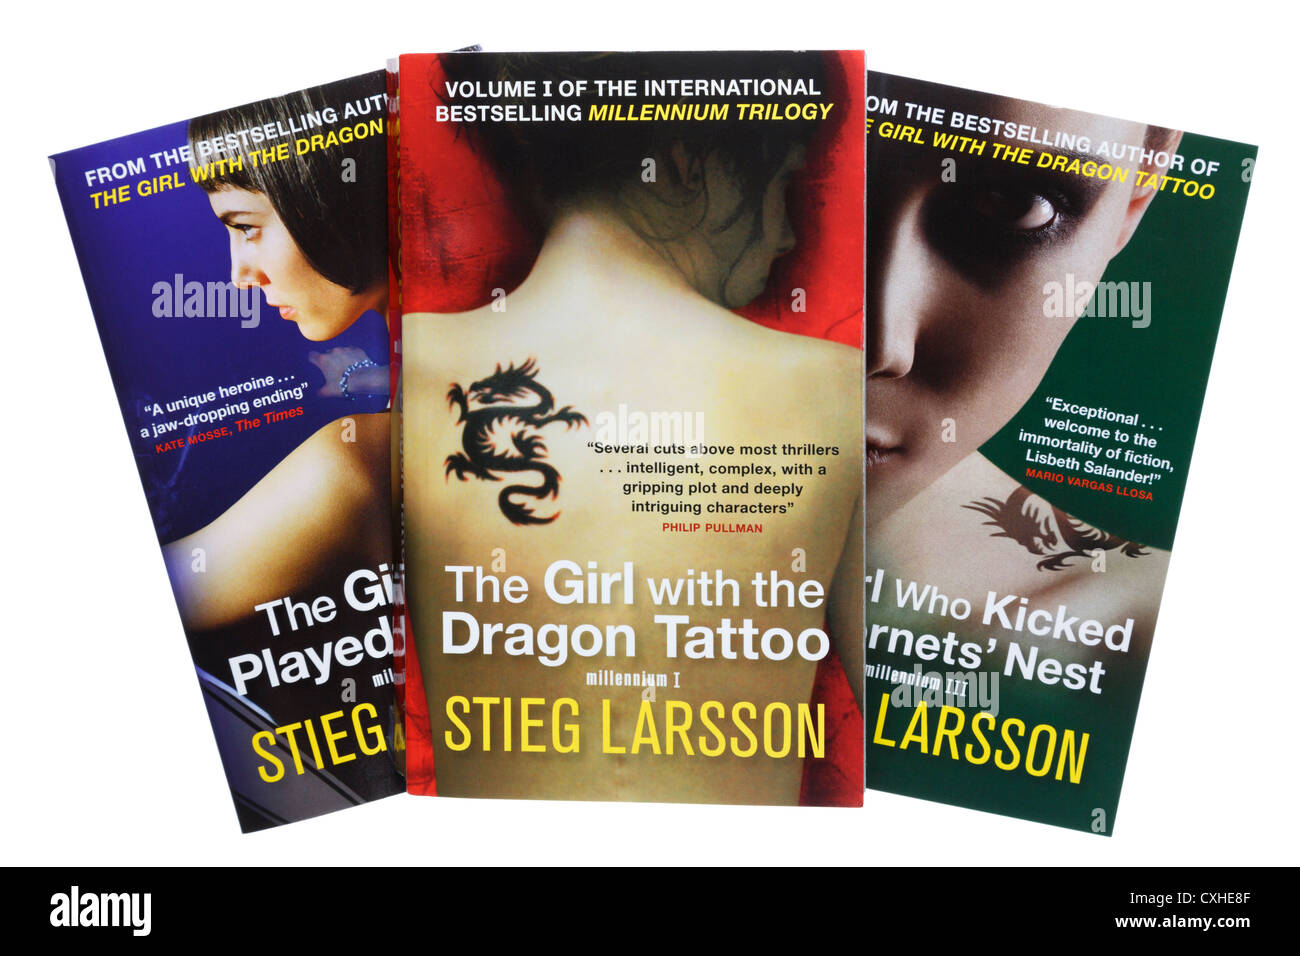 Thee populaire BEST-seller livre de fiction de livre de livre de fiction de livre de livre de livre de millénium par Stieg Larsson traduit en anglais isolé sur blanc. Angleterre Royaume-Uni Banque D'Images